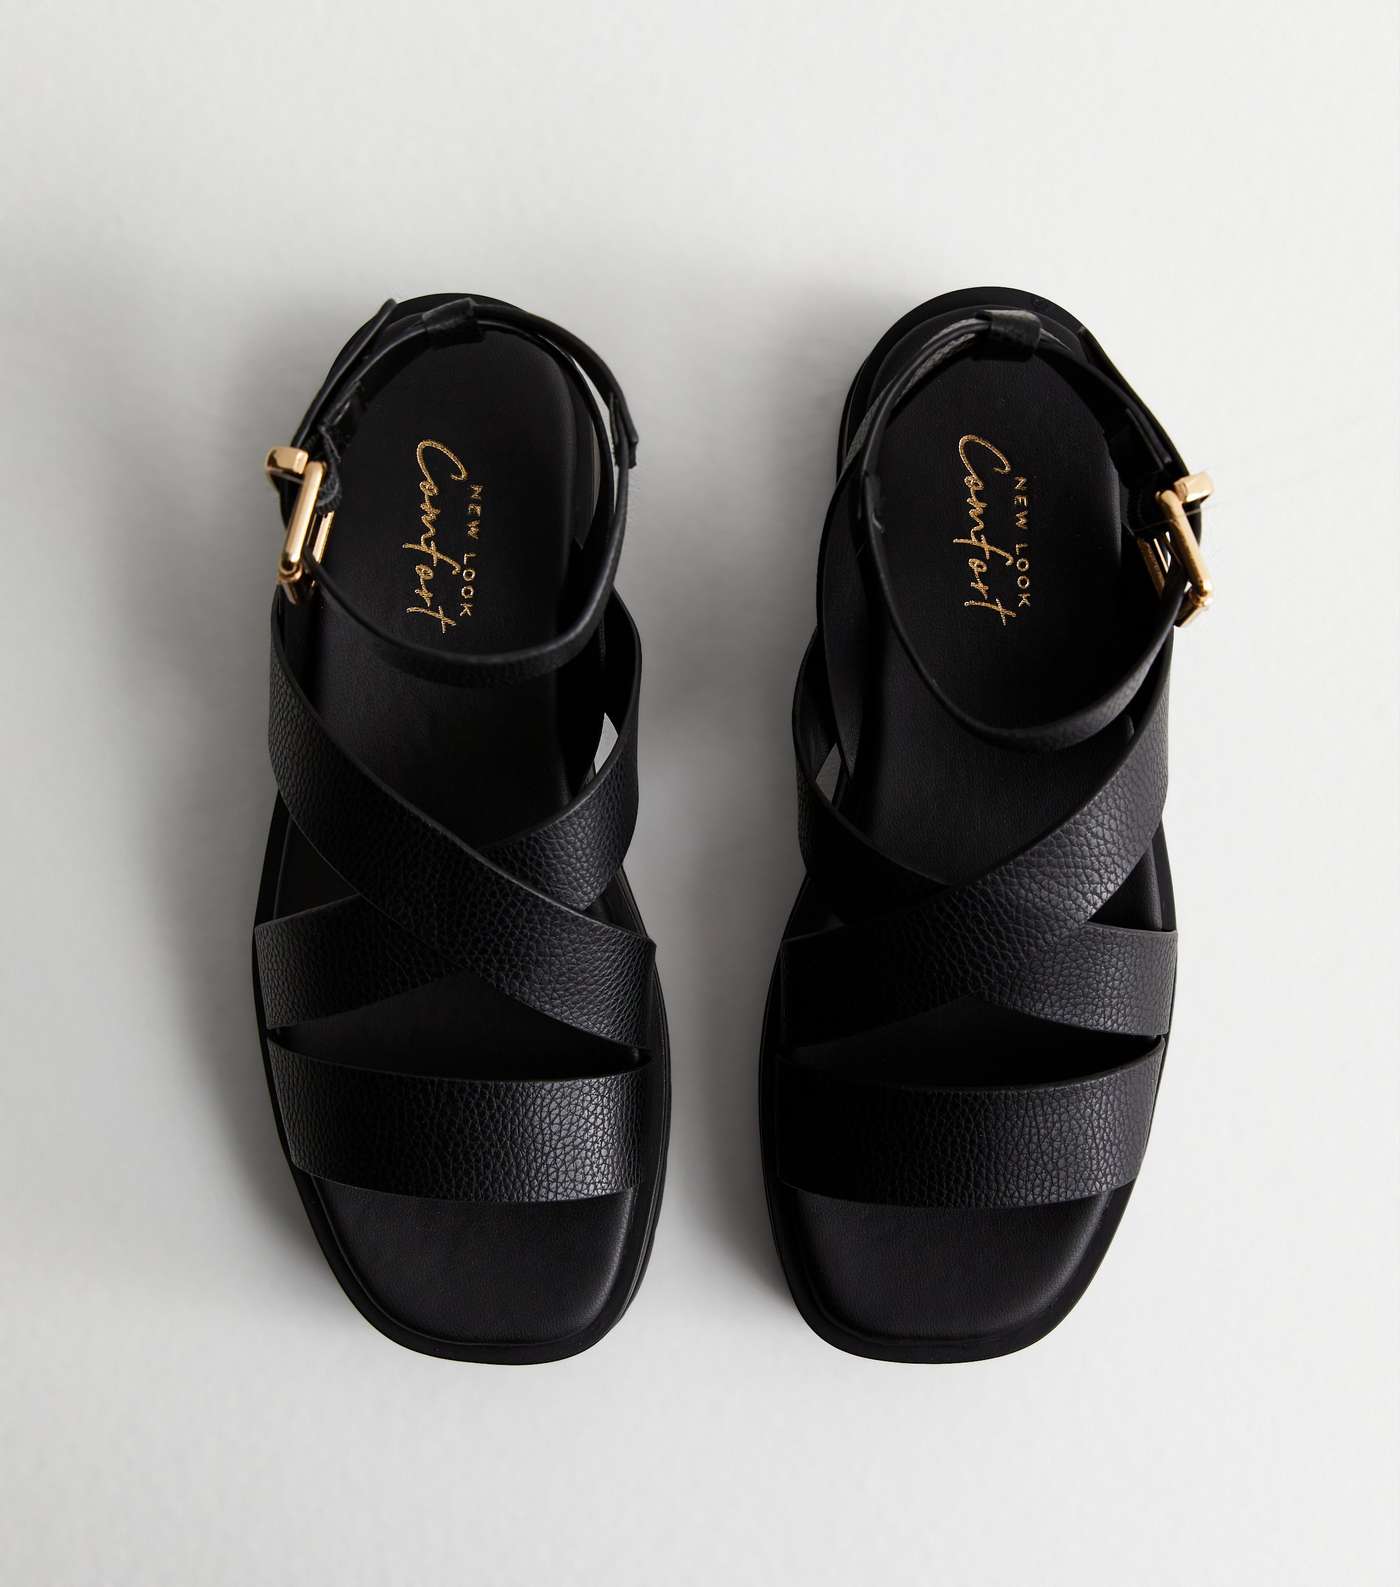 Black Leather-Look Cross Over Flatform Sandals Image 3